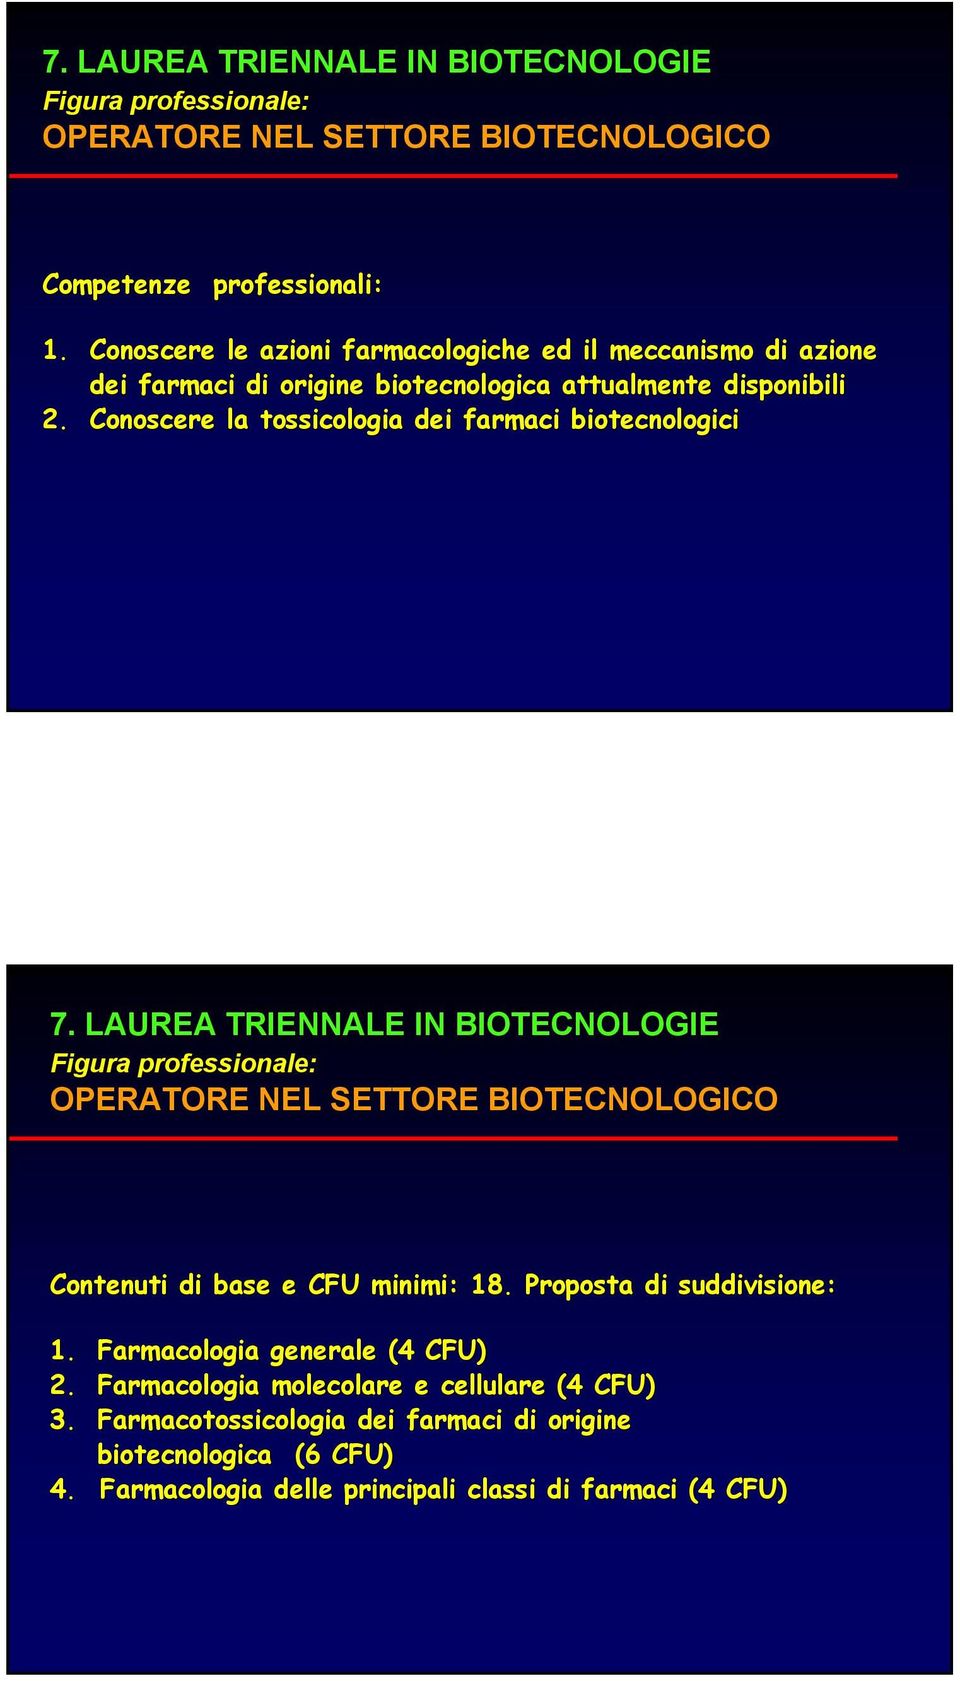 Conoscere la tossicologia dei farmaci biotecnologici 7.